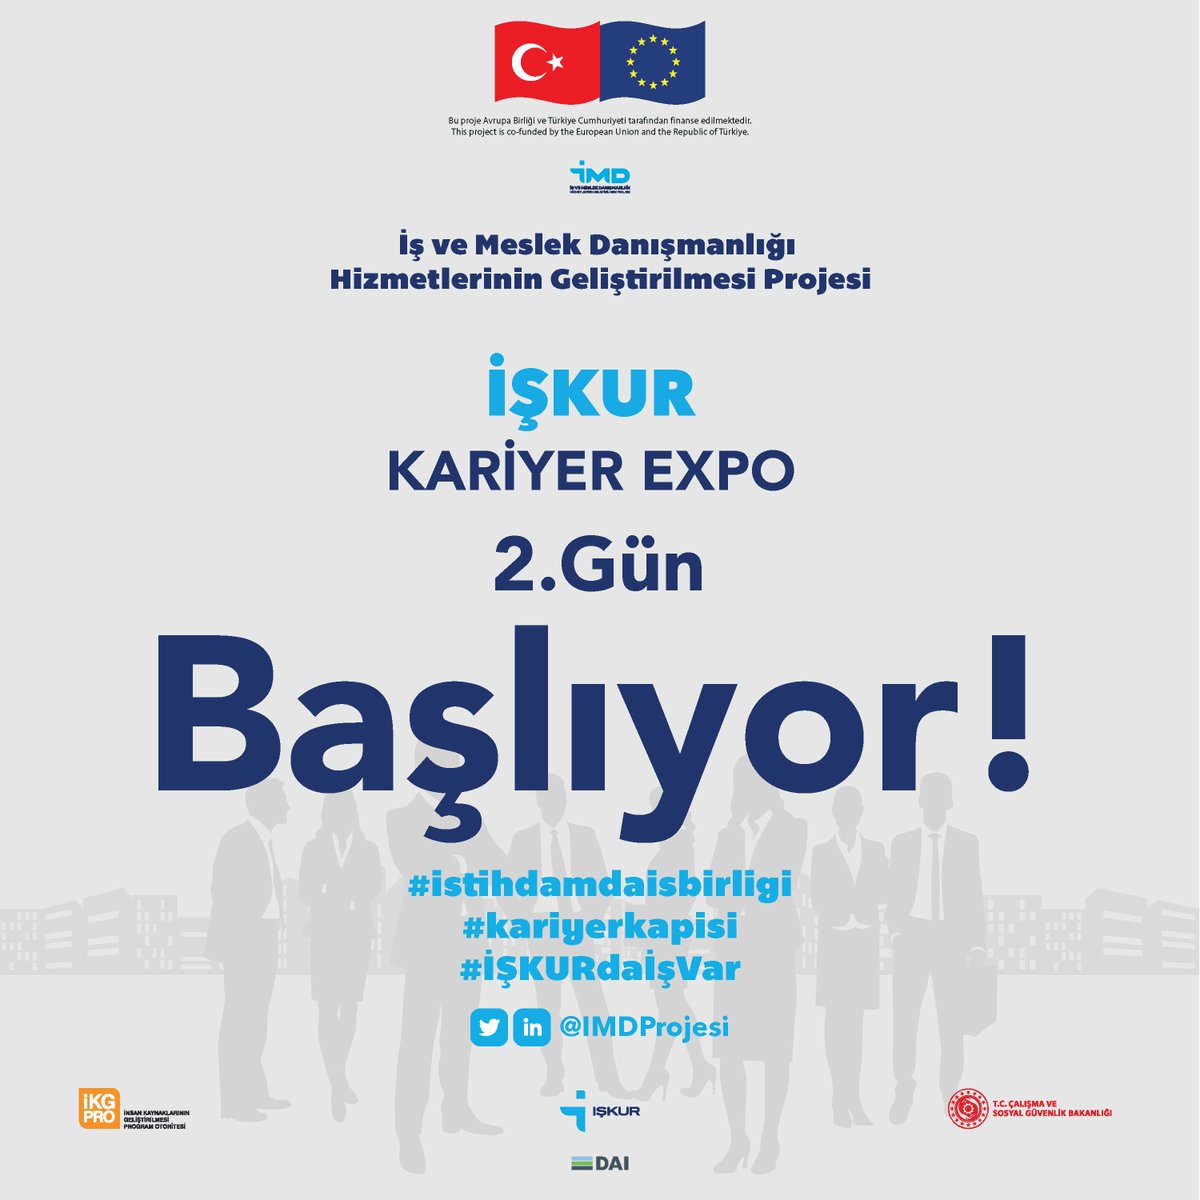 İŞKUR Kariyer EXPO'nun 2. günü başlıyor. #kariyerkapisi #istihdamdaisbirligi #İŞKURdaİşVar #iskur #sivasiskur @TurkiyeIsKurumu